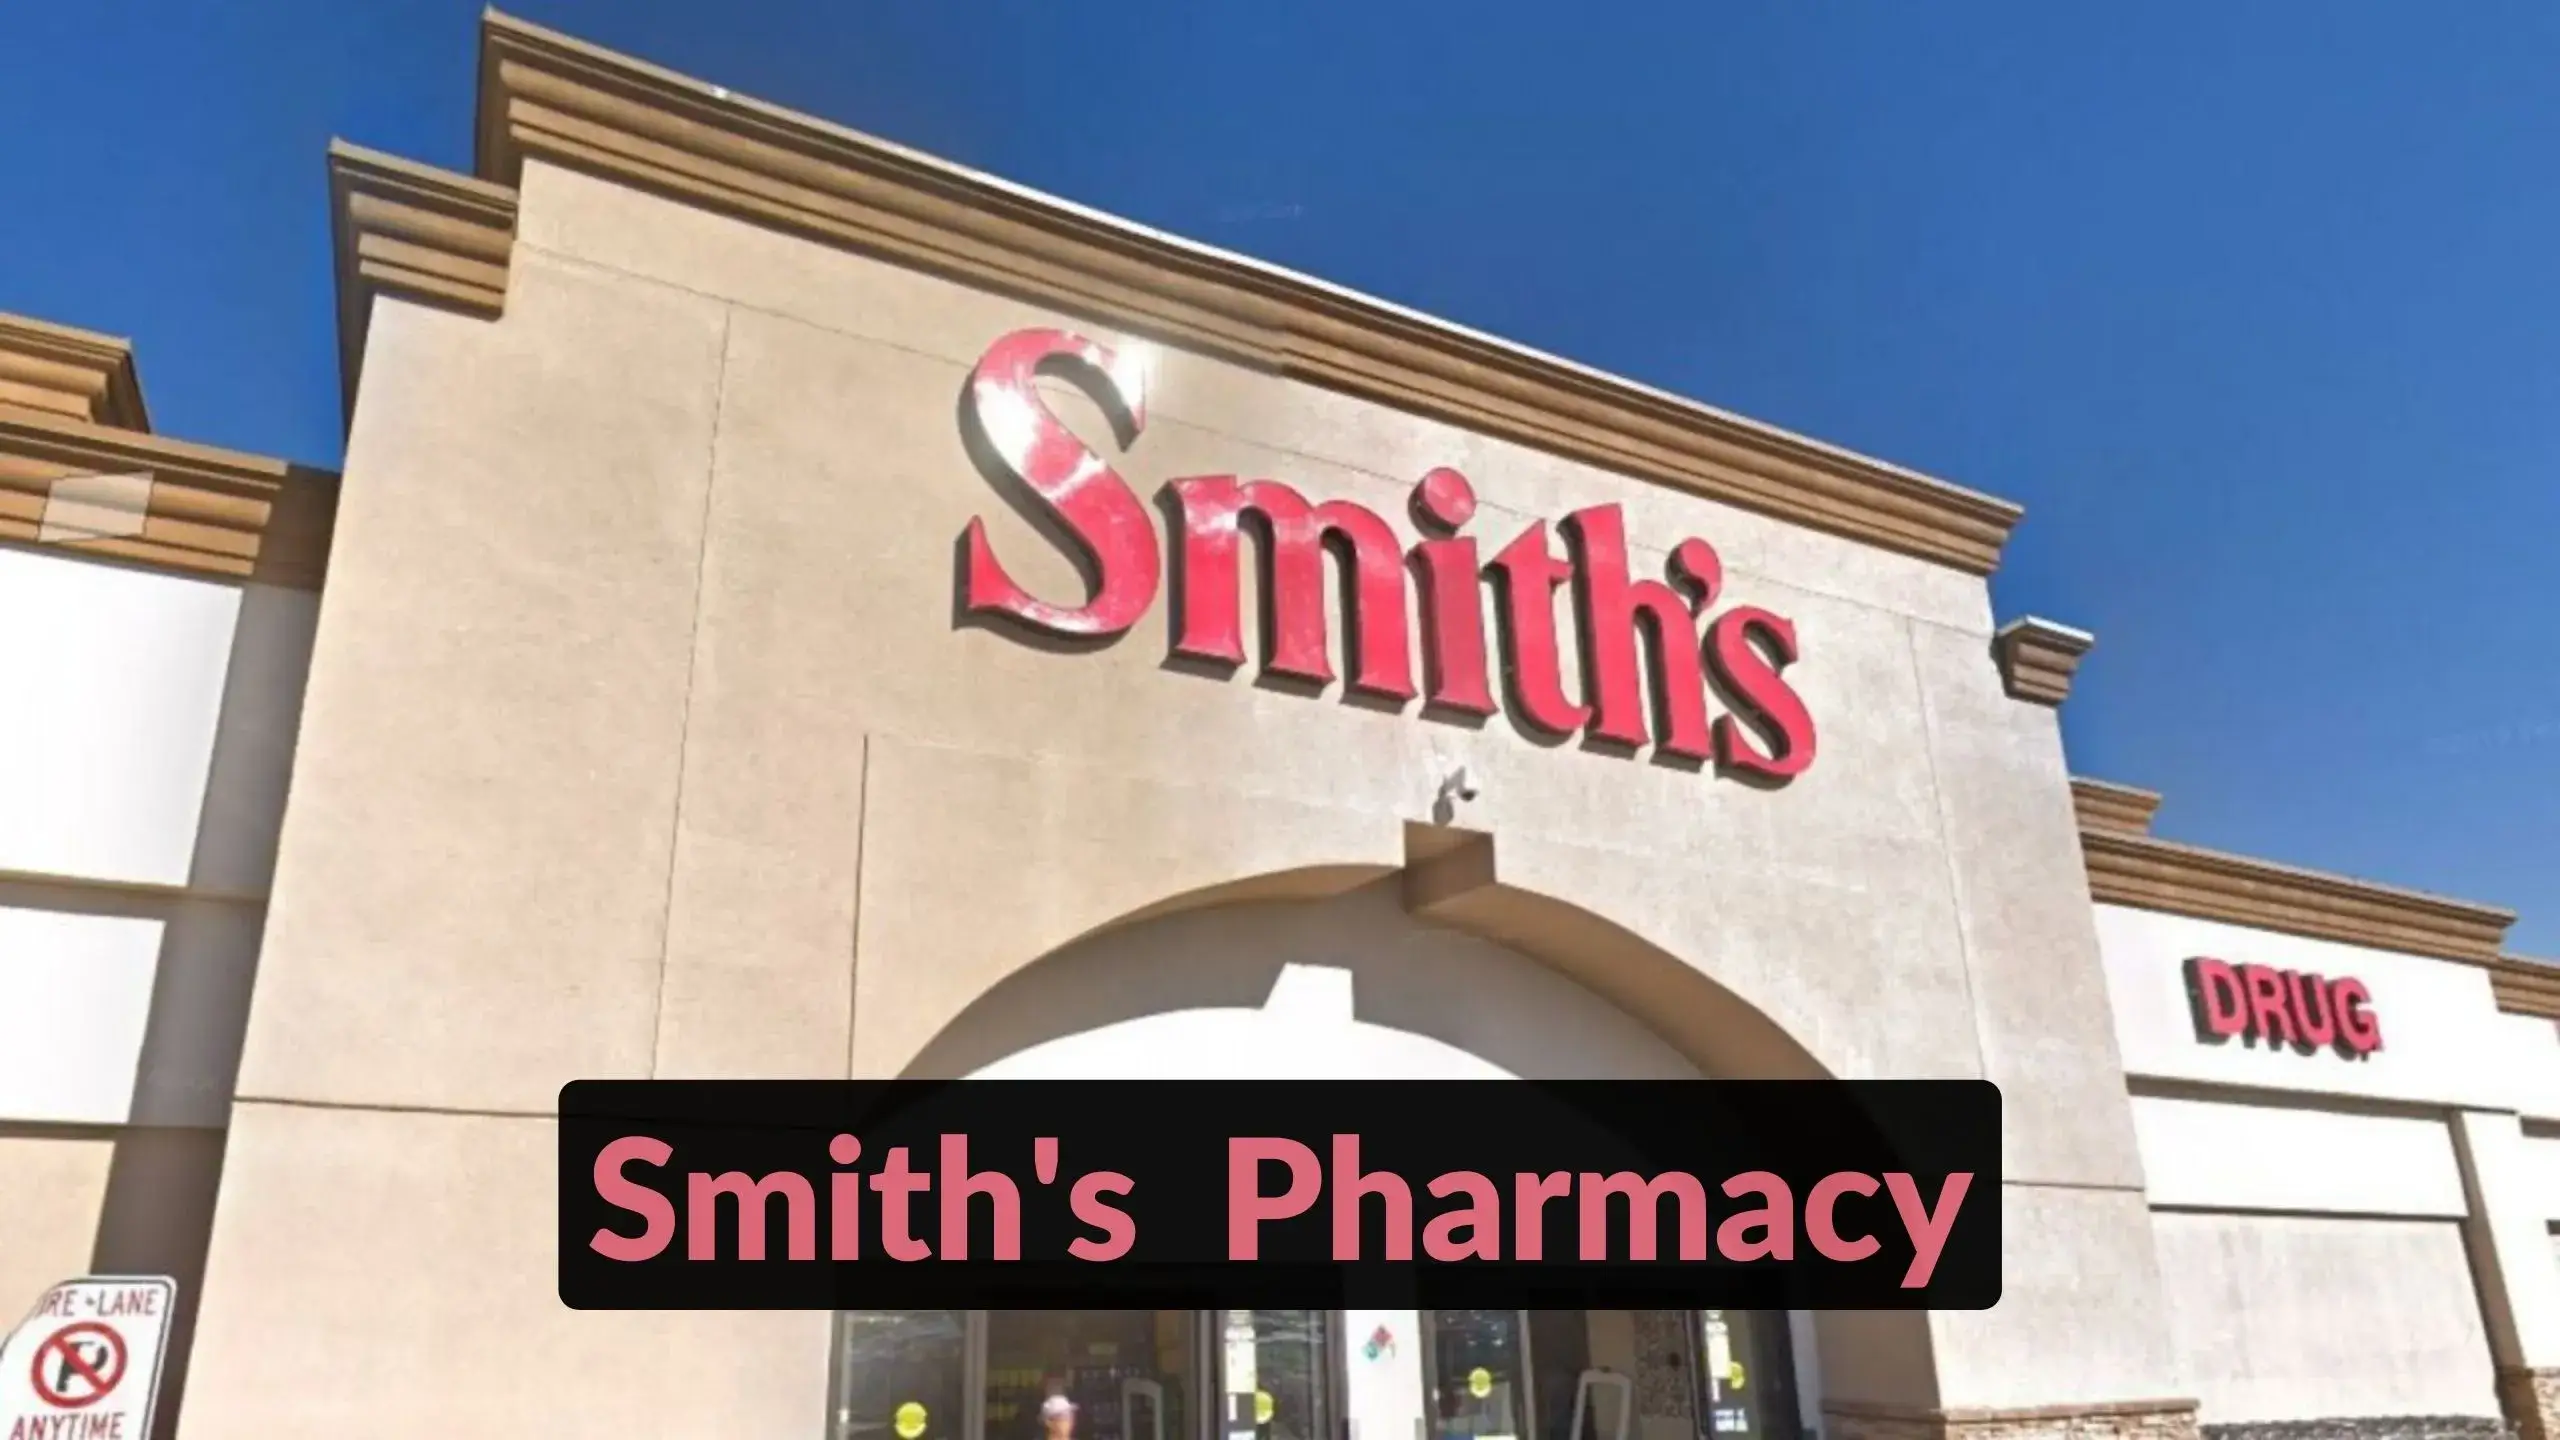 Smith’s Pharmacy Hours & Find Smith’s Pharmacy Near Me Location